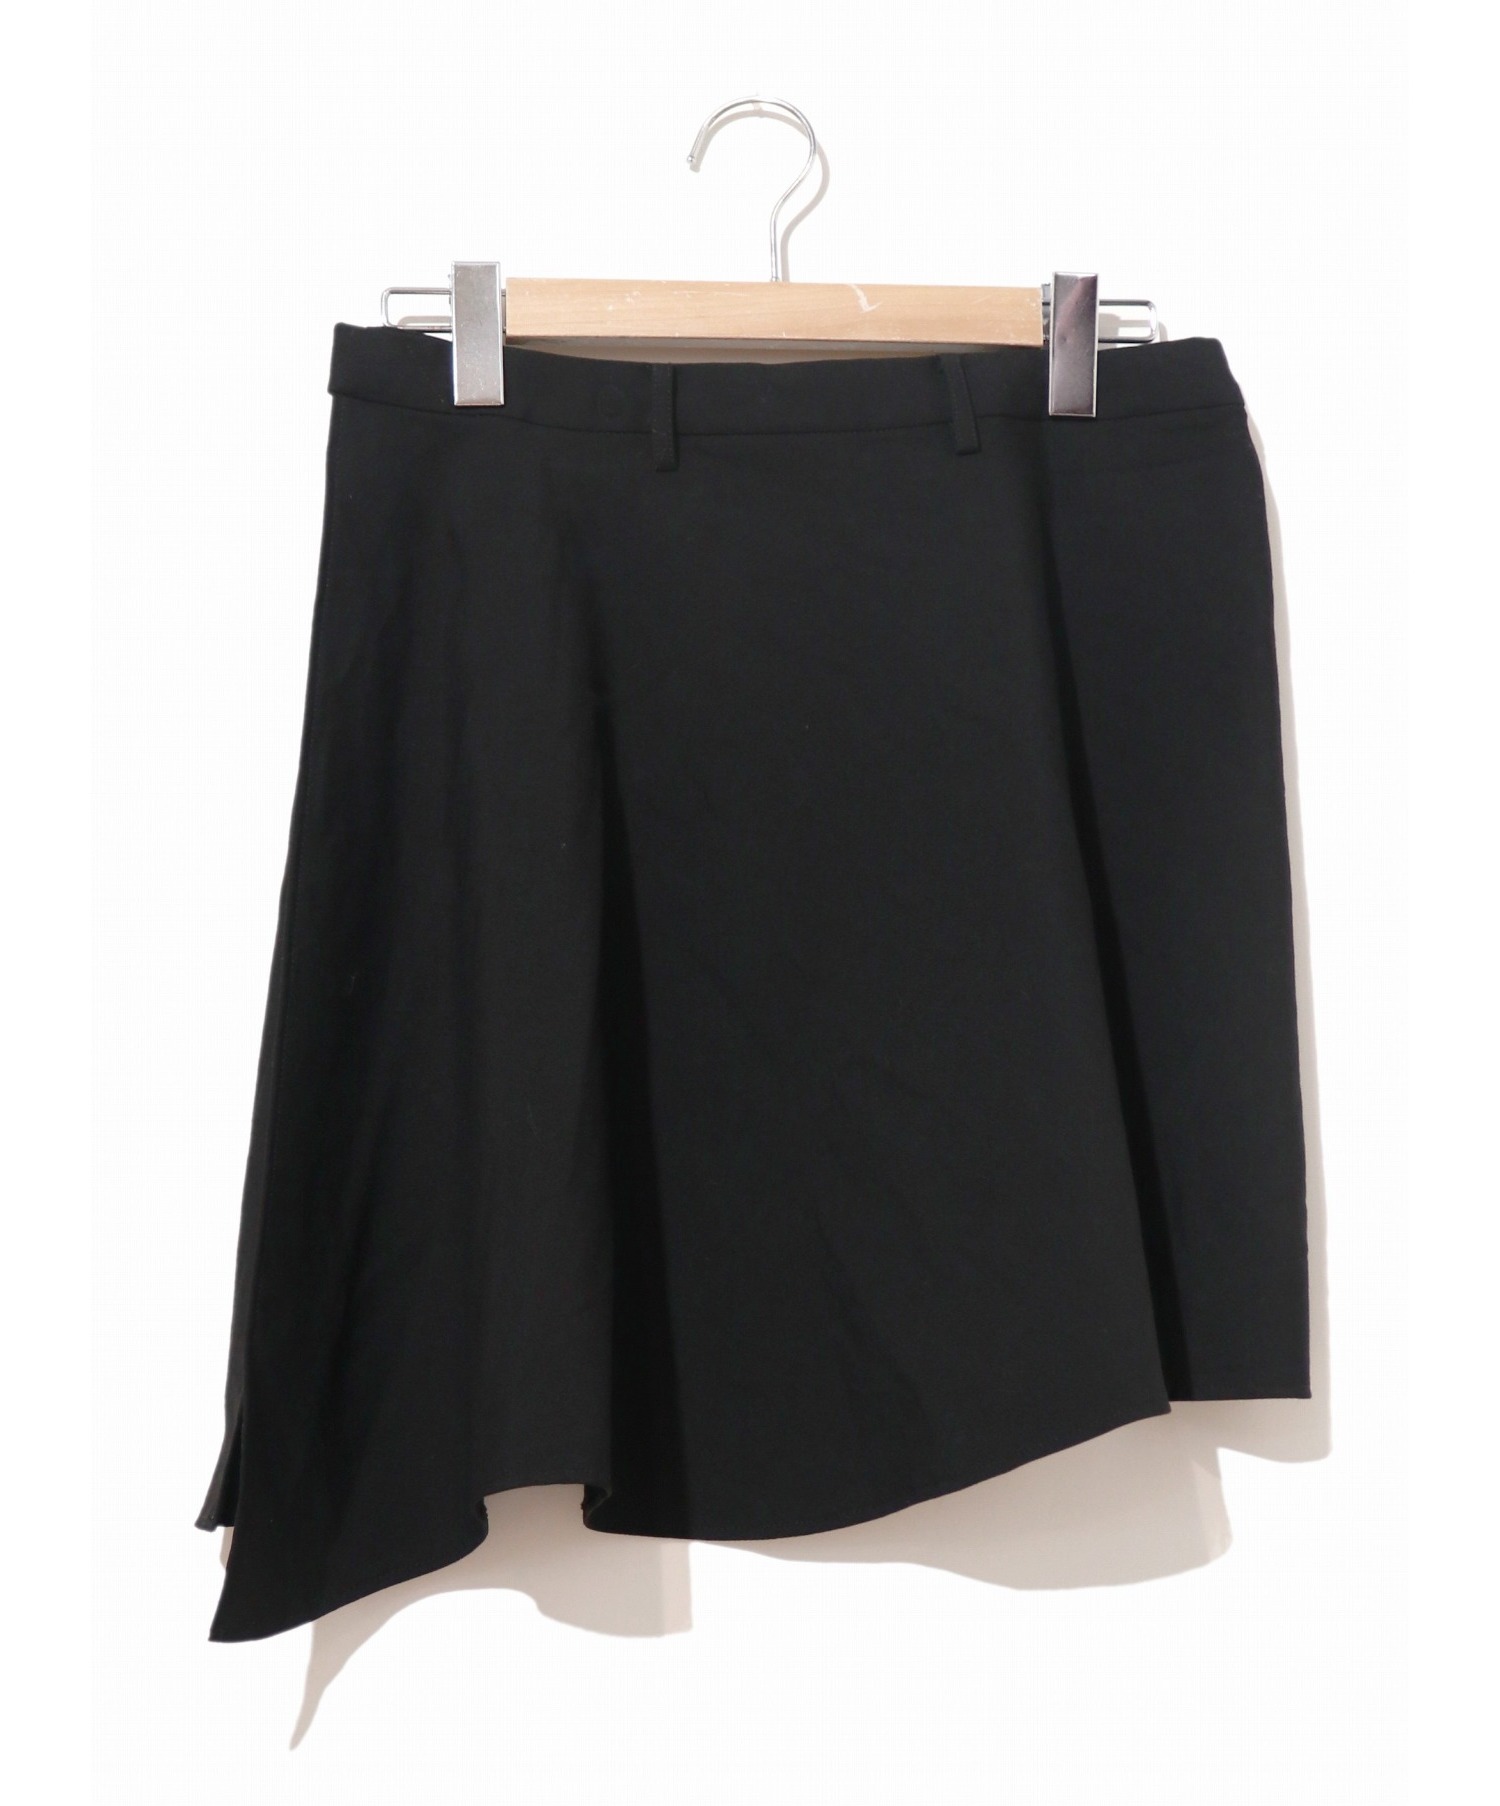 LAD MUSICIAN (ラッドミュージシャン) ウールギャバジンラップスカート ブラック サイズ:42表記 15SS・定番ラップスカート